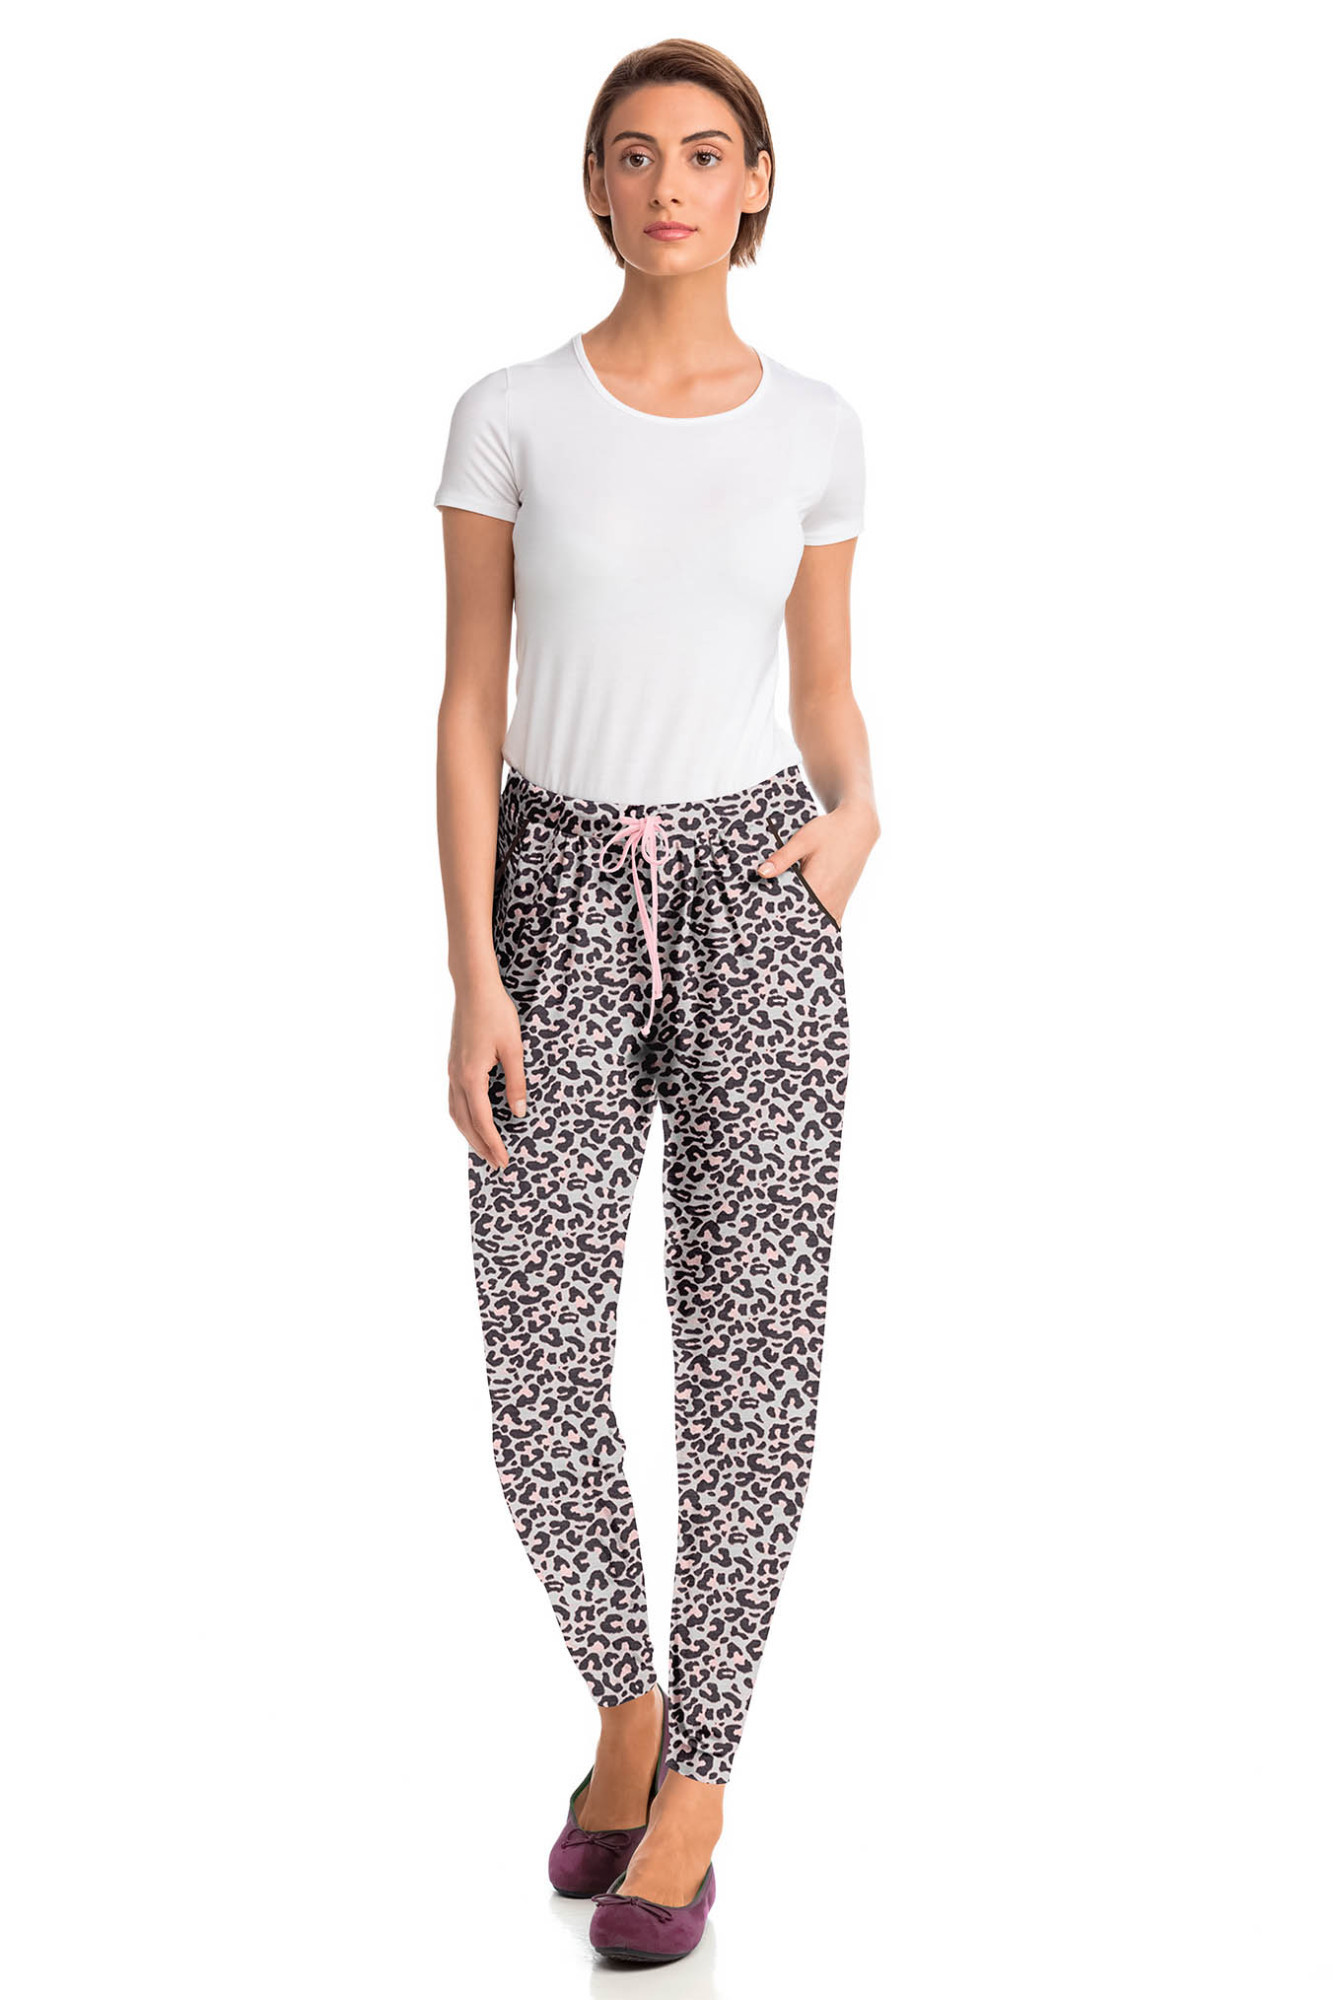 Vamp - Dámské stylové pyžamové kalhoty 15910 - Vamp pink powder S